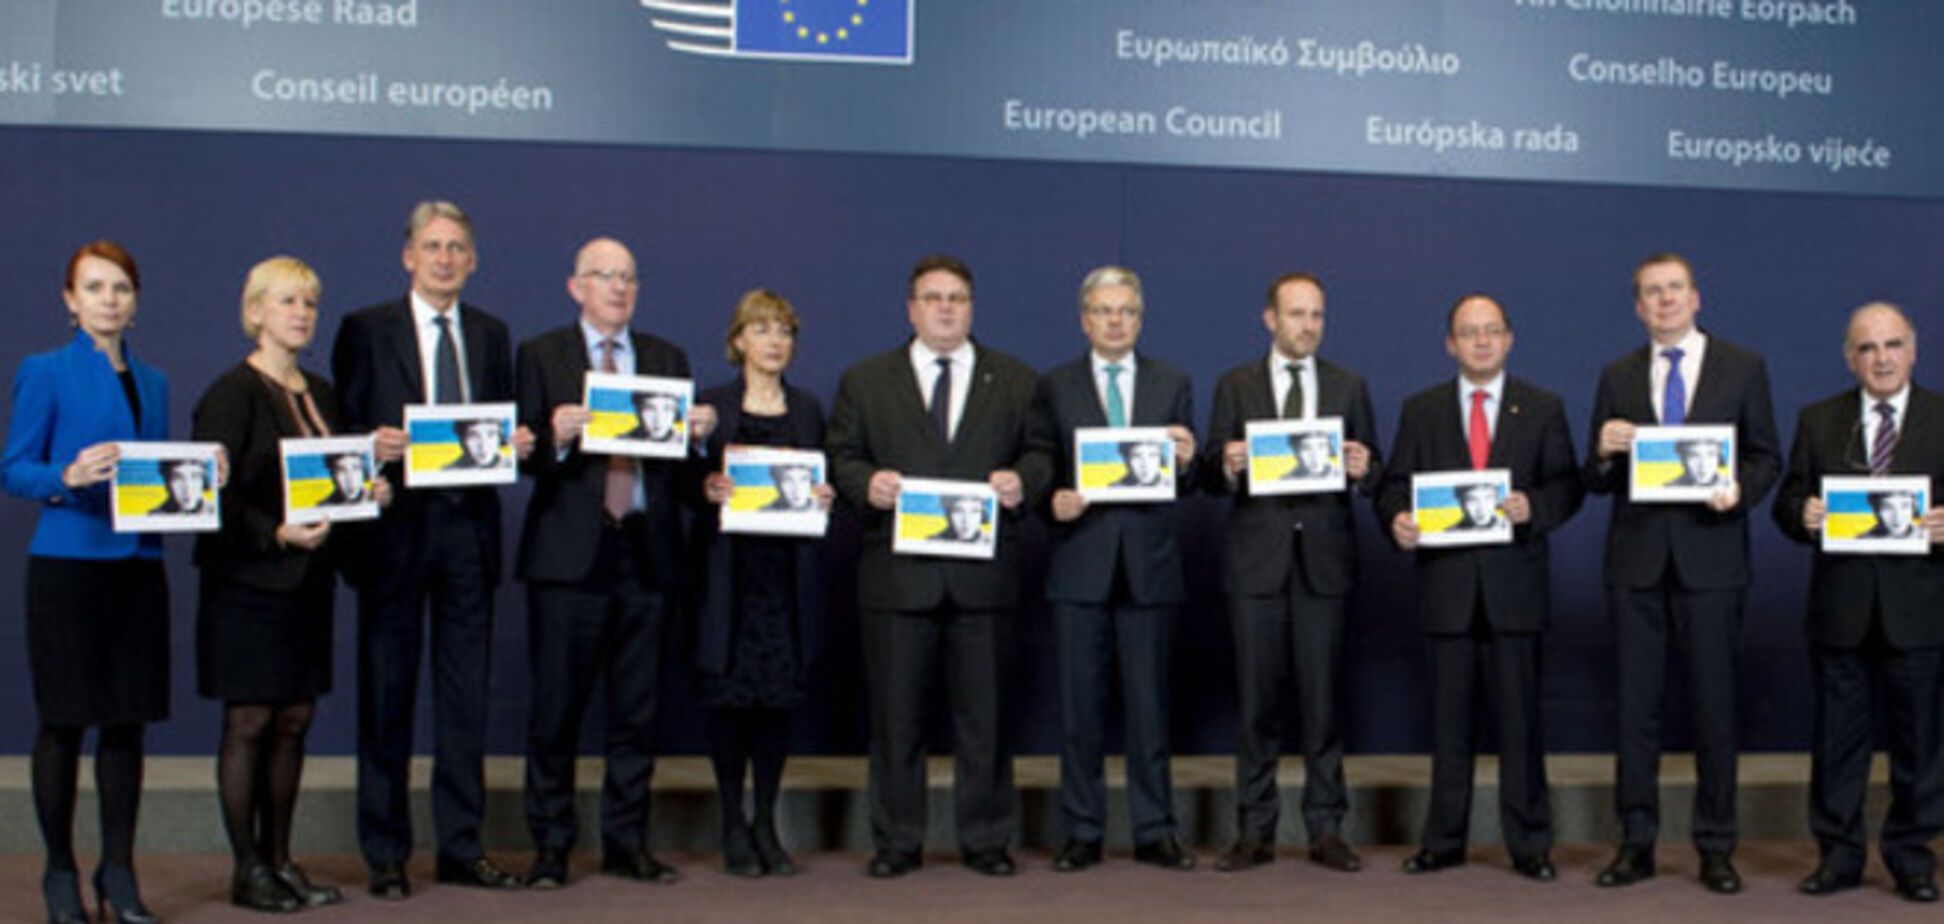 Міністри закордонних справ ЄС провели акцію з вимогою звільнити Савченко: фотофакт